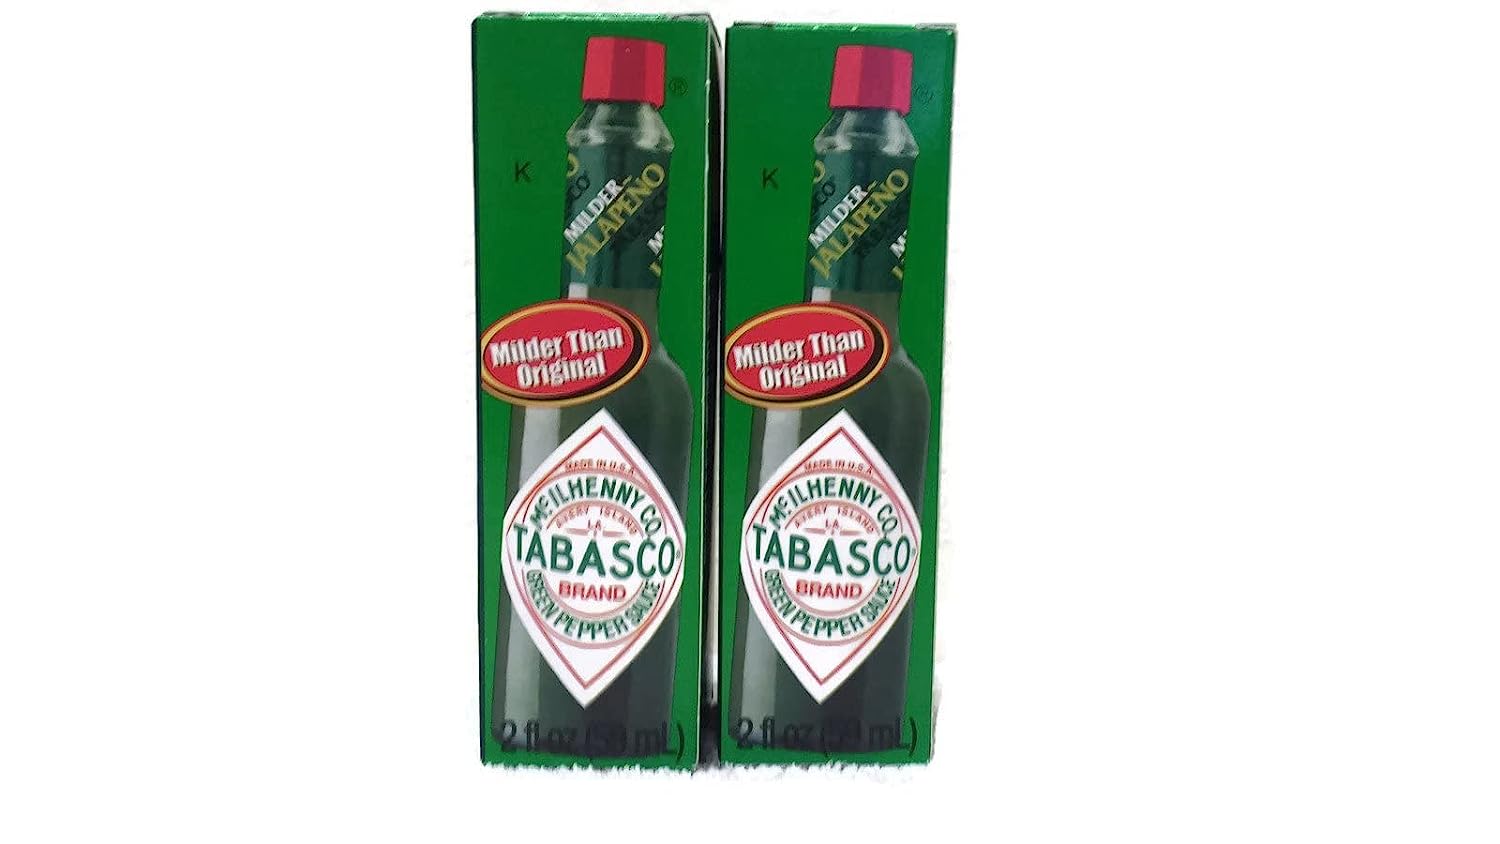 Mcilhenny Co Tabasco Milder Jalapeno Pepper Sauce 2 Oz Bottle (Pack of 2)